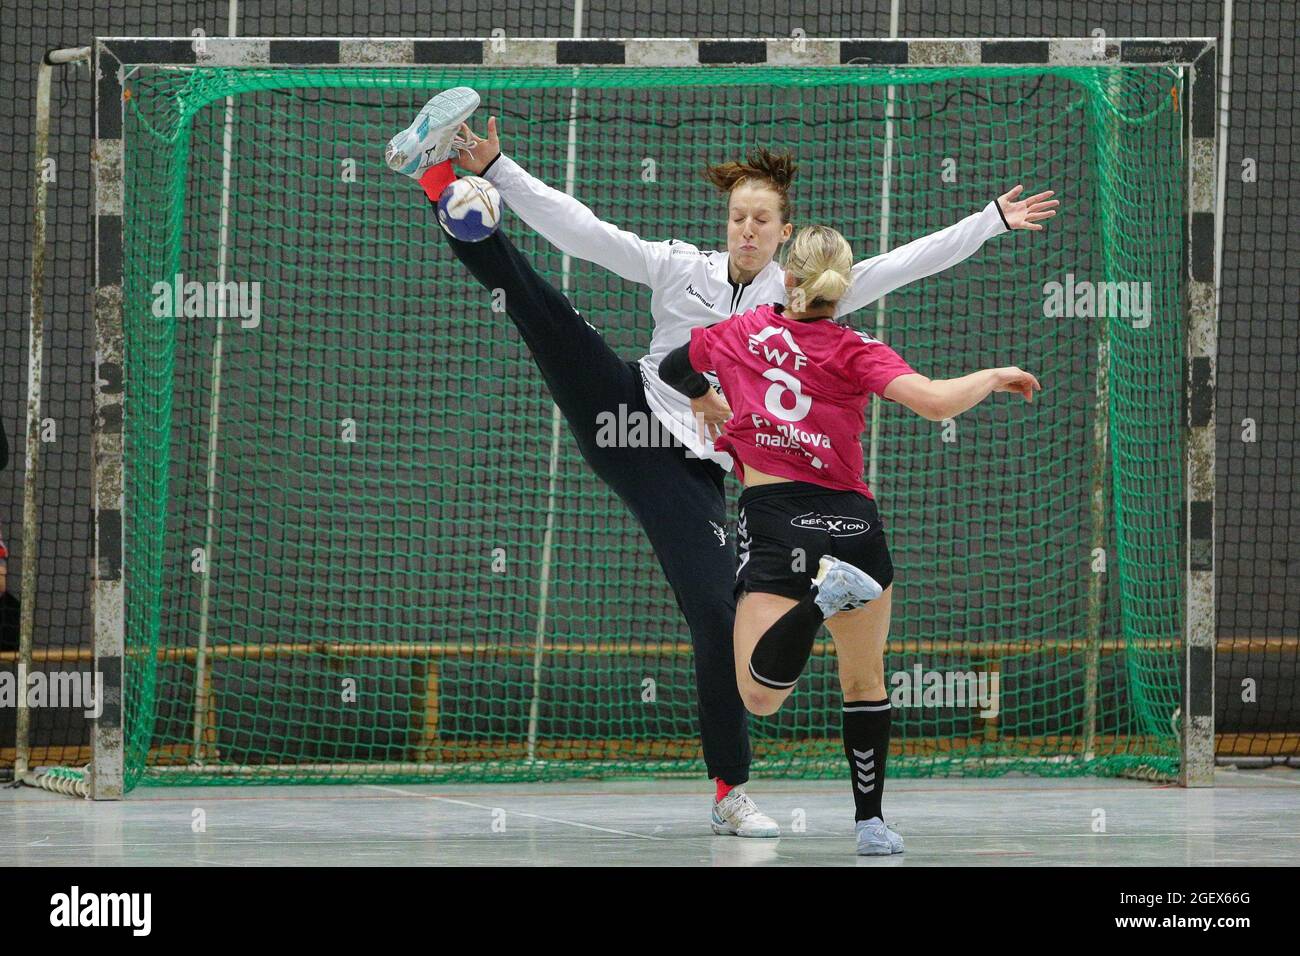 Torwartparade mit extremer Action. Handball-Torhüter mit Stand spaltet sich im Sprung gegen den Spieler. Stockfoto